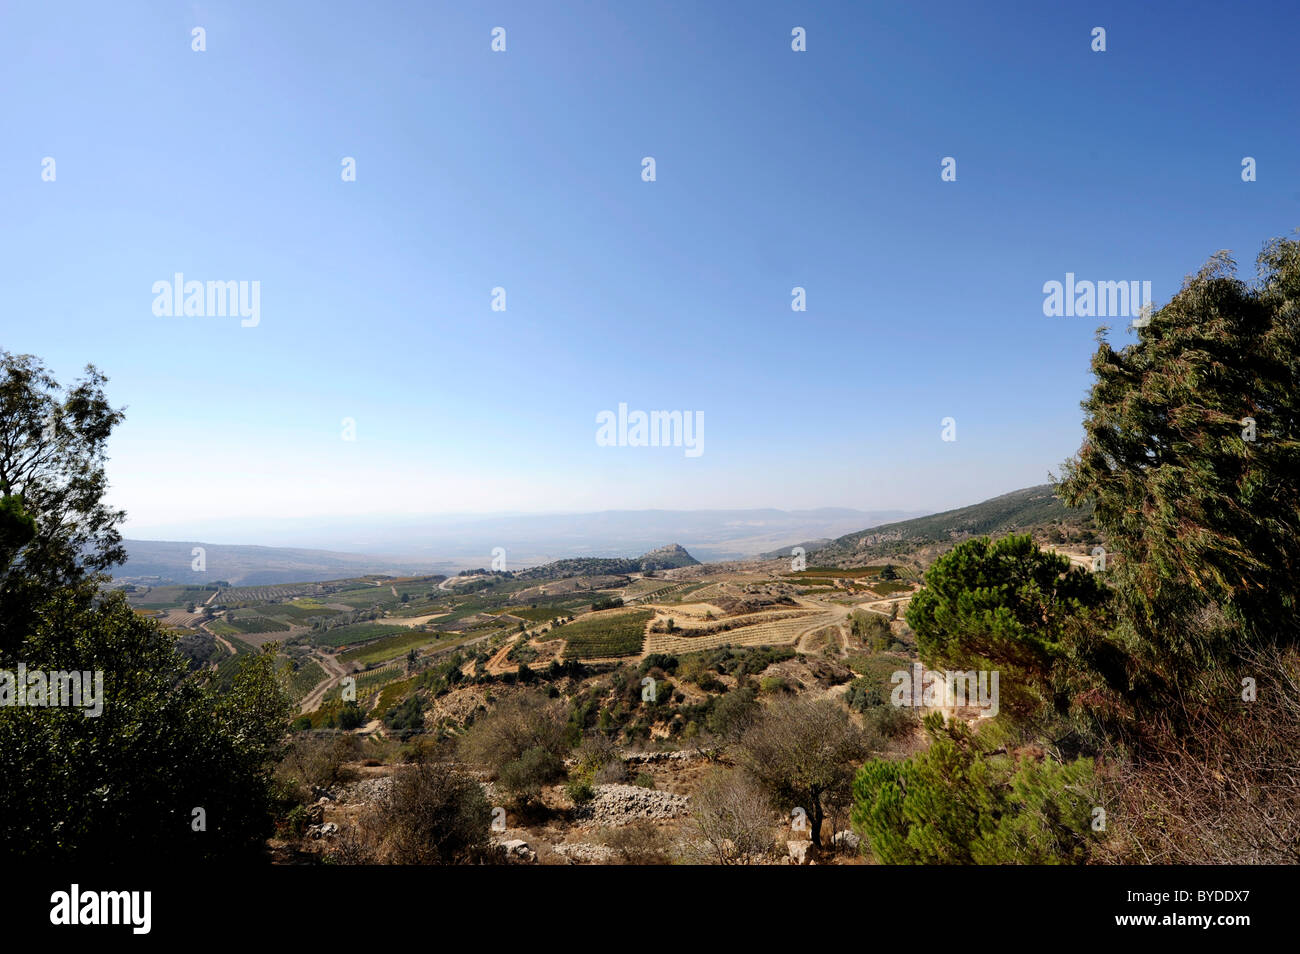 Plateau du Golan, dans le milieu du dos Nimrod Fortress, l'Arabe de Qala'at al-Subeiba, Hauteurs du Golan, le mont Hermon, Israël, Moyen Orient Banque D'Images